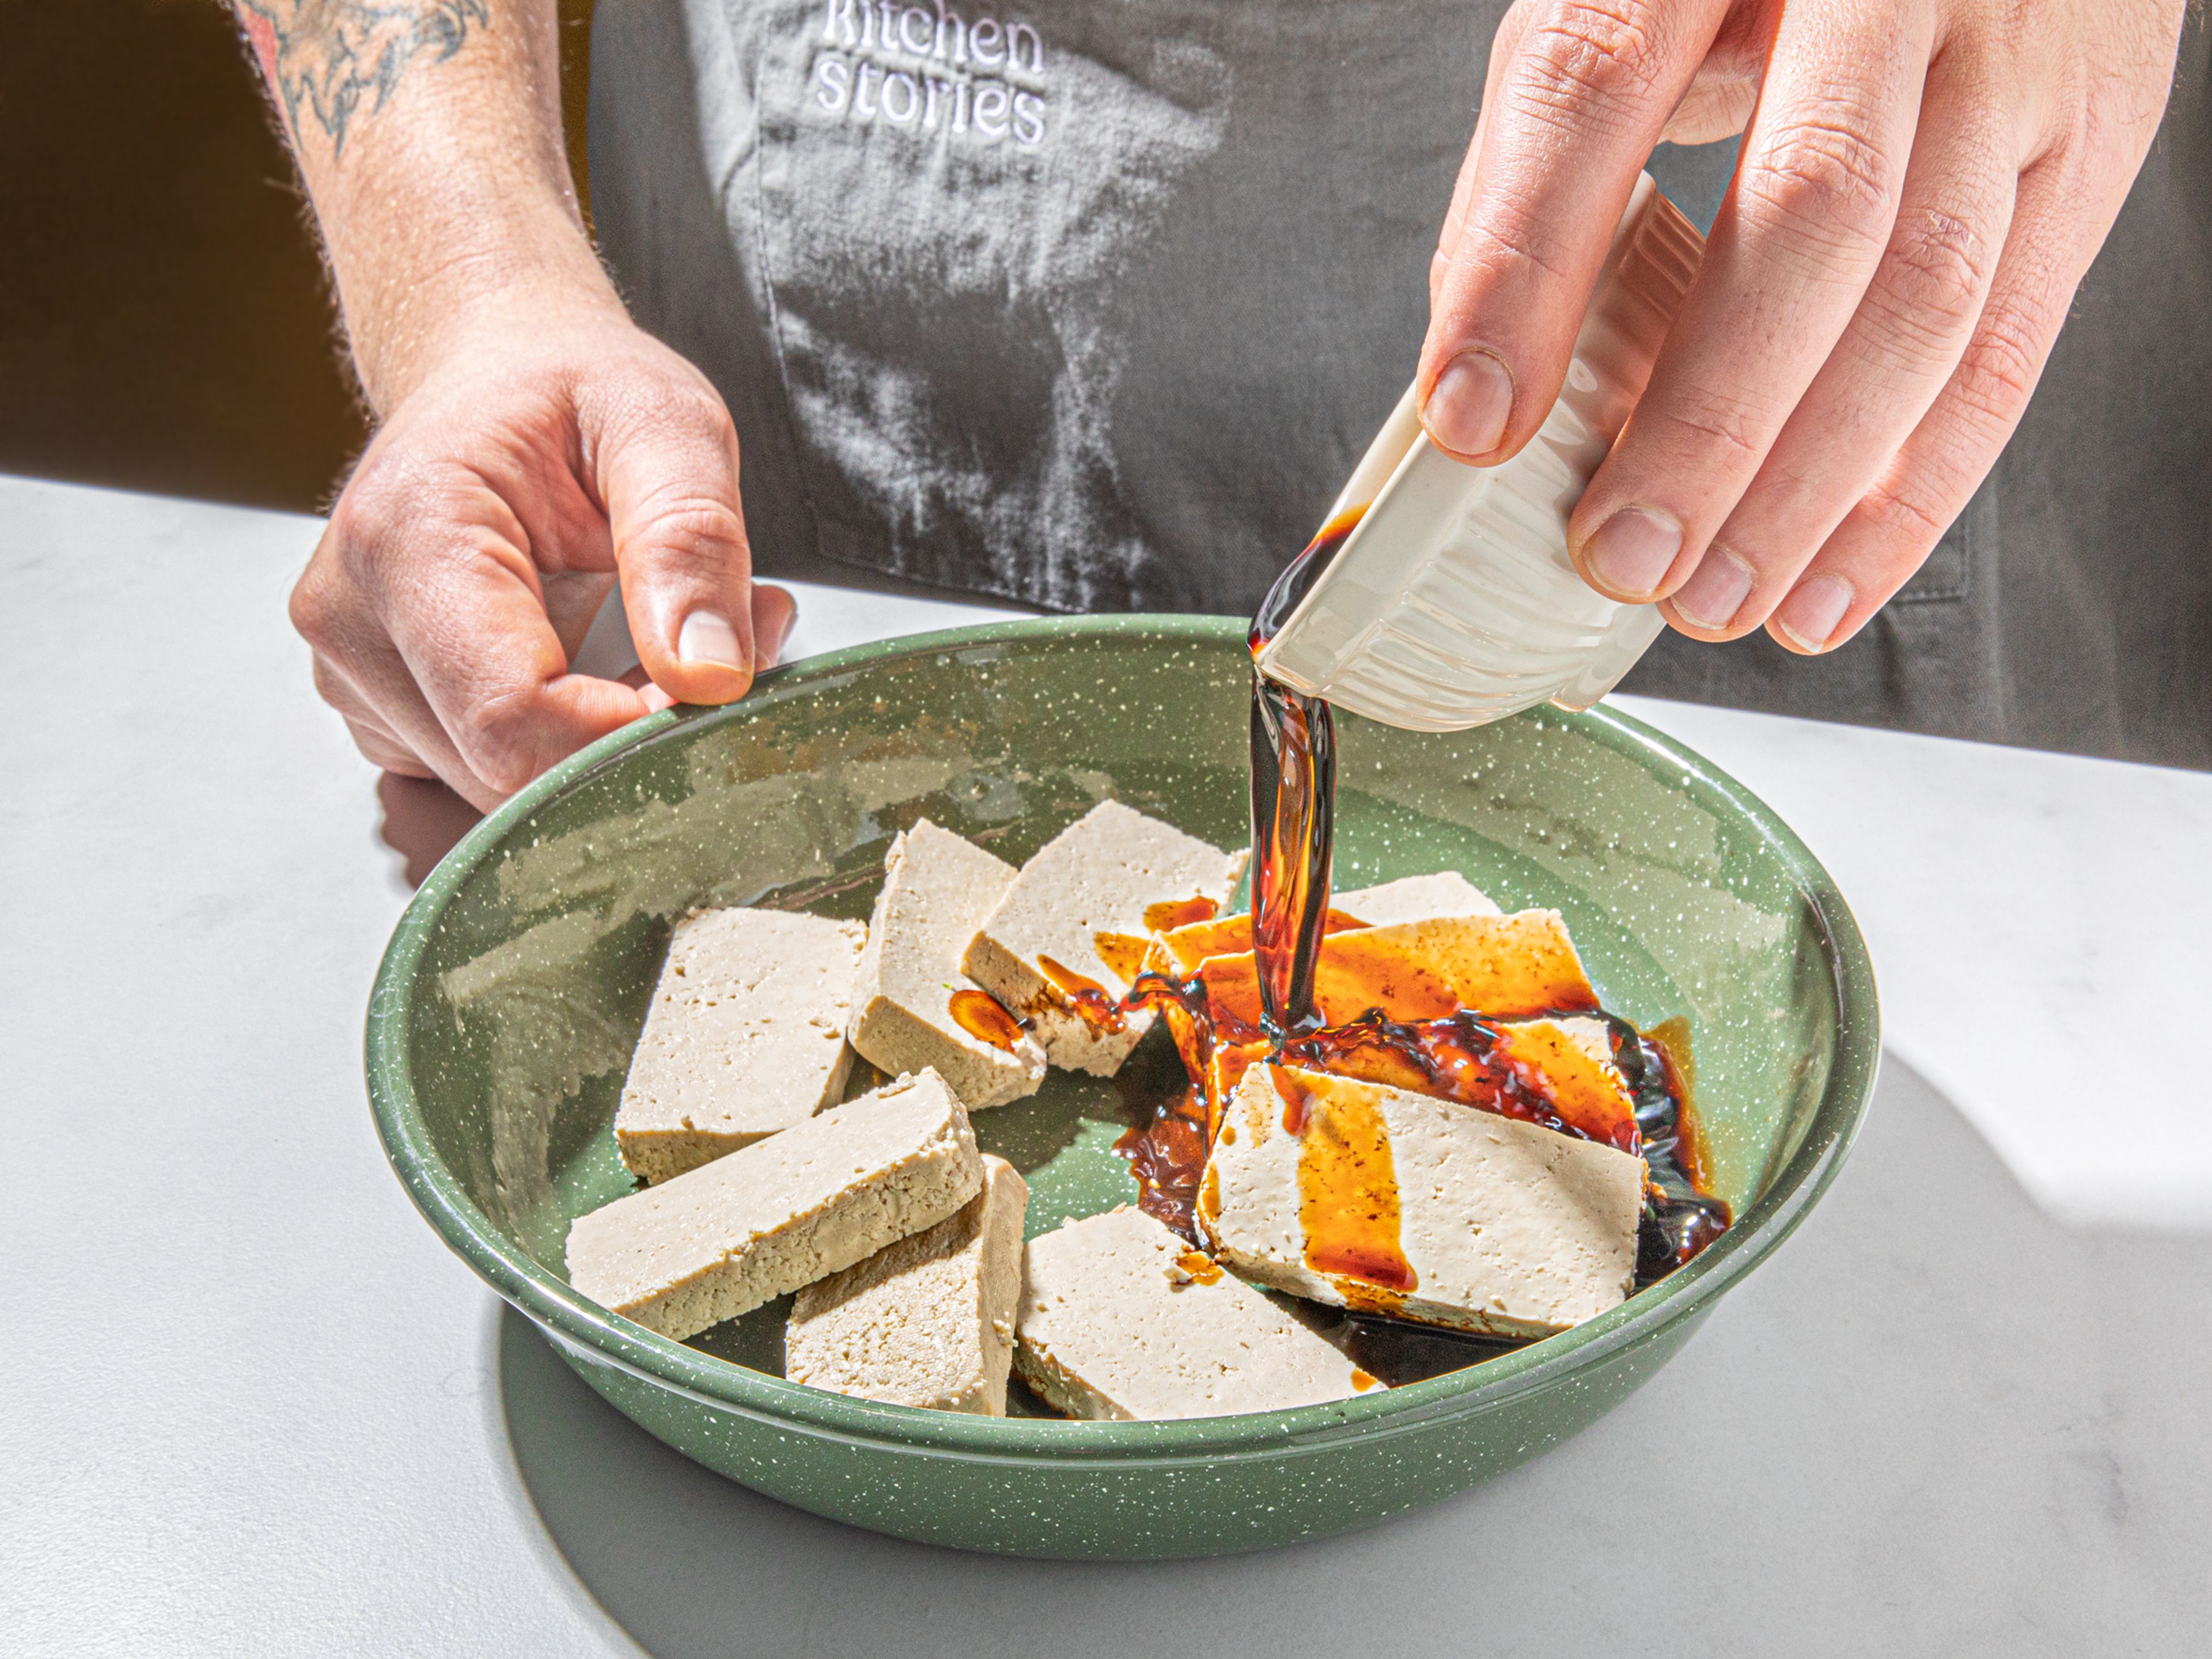 Tofu mit Küchenpapier trocken tupfen und in ca. 2 cm dicke Streifen schneiden. Balsamicoessig, Sojasauce und eine Prise Zucker in eine Schüssel geben und verquirlen. Den geschnittenen Tofu auf einen tiefen Teller legen und die Essig-Soja-Mischung darüber gießen. Mit Frischhaltefolie abdecken, in den Kühlschrank stellen und mindestens 30 Min. oder bis zu 8 Std. marinieren lassen.